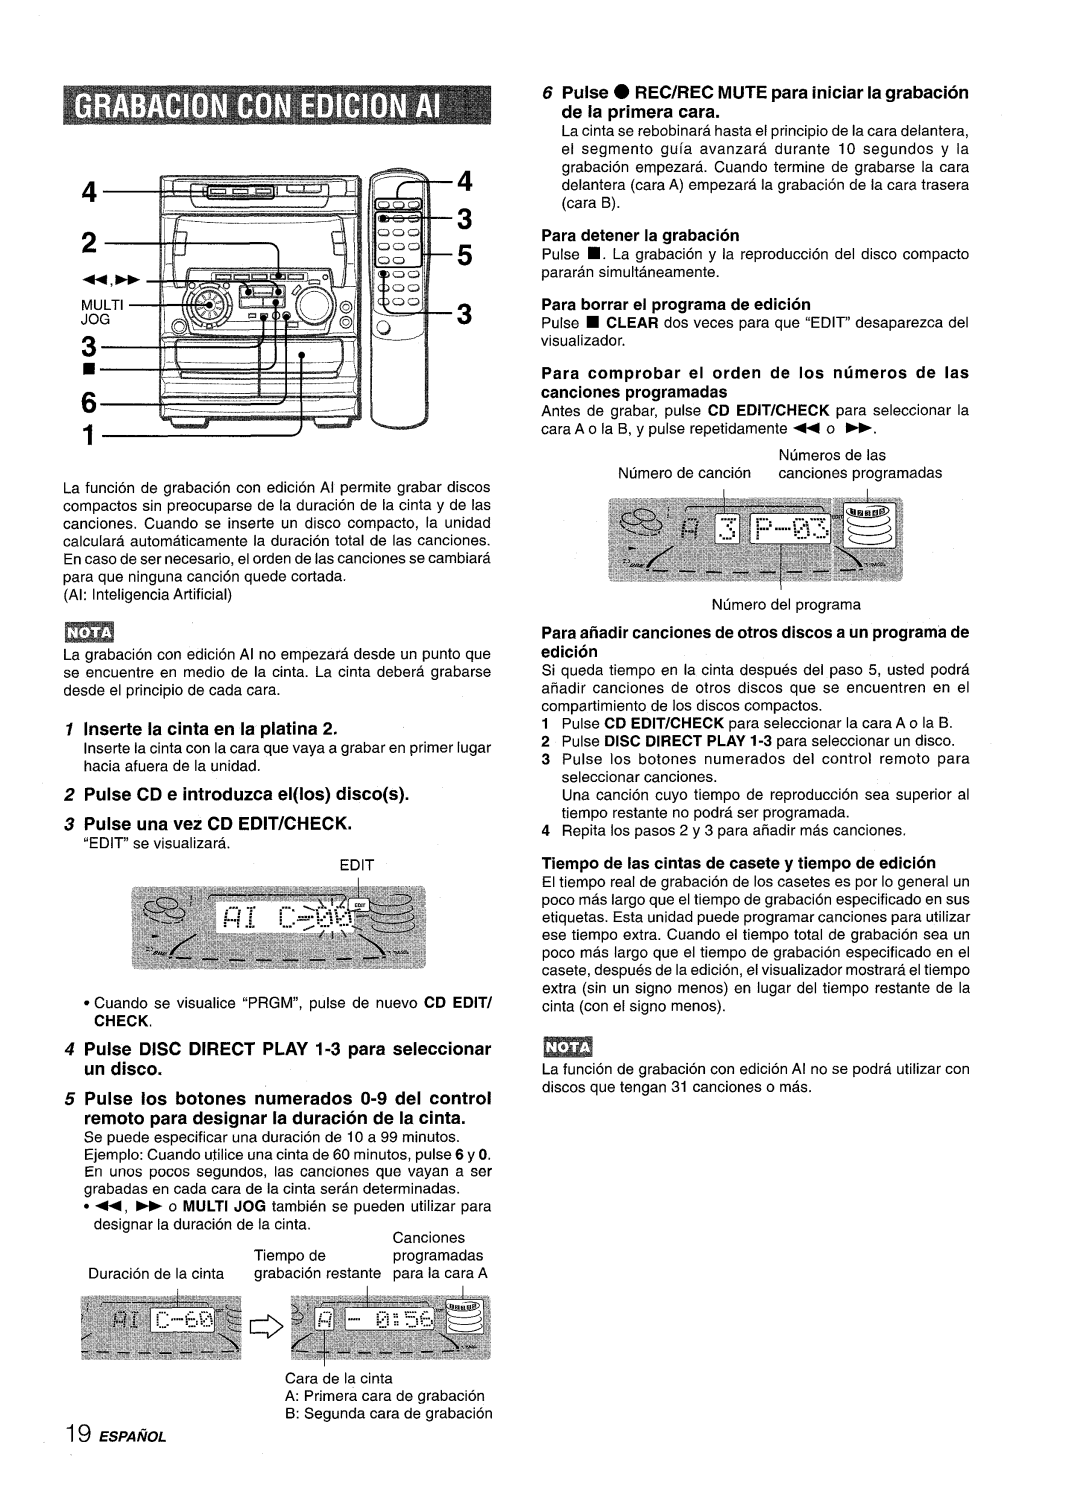 Sony NSX-A707 p+”’, EsPAfioL, Inserte la cinta en la platina, Pulse DISC DIRECT PLAY 1-3 para seleccionar un disco, Check 